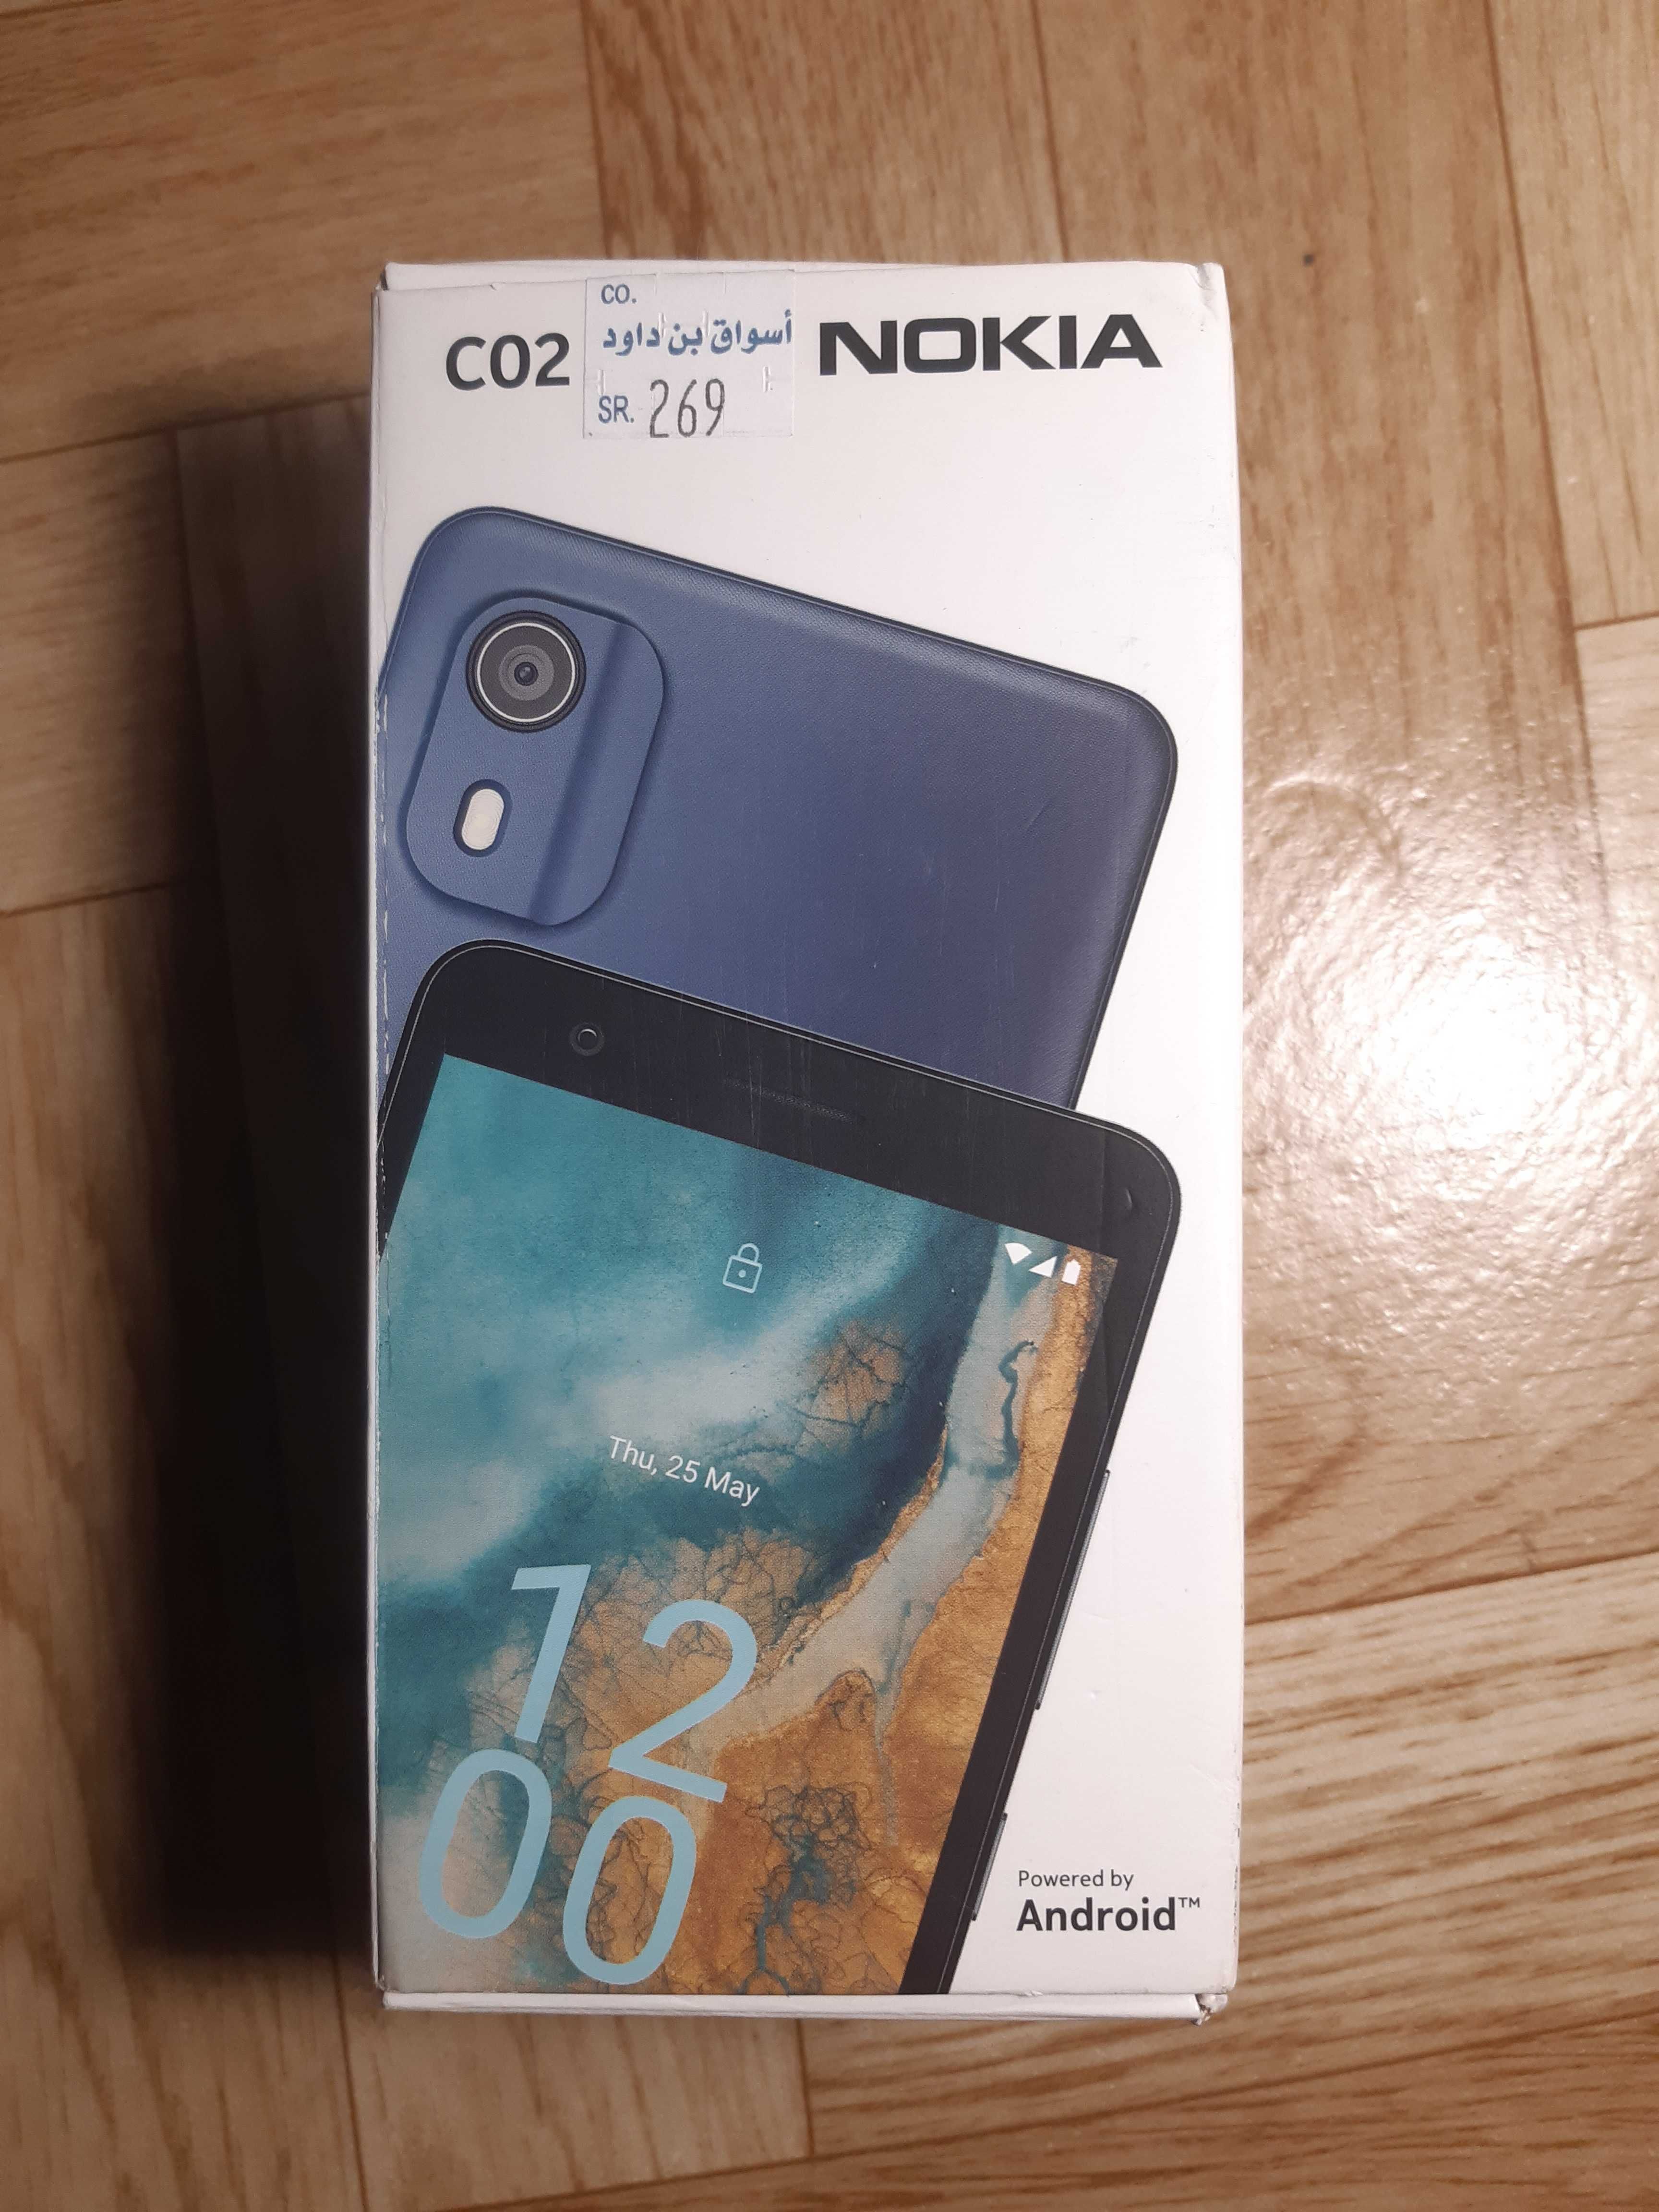 Nokia CO2 holati yangi